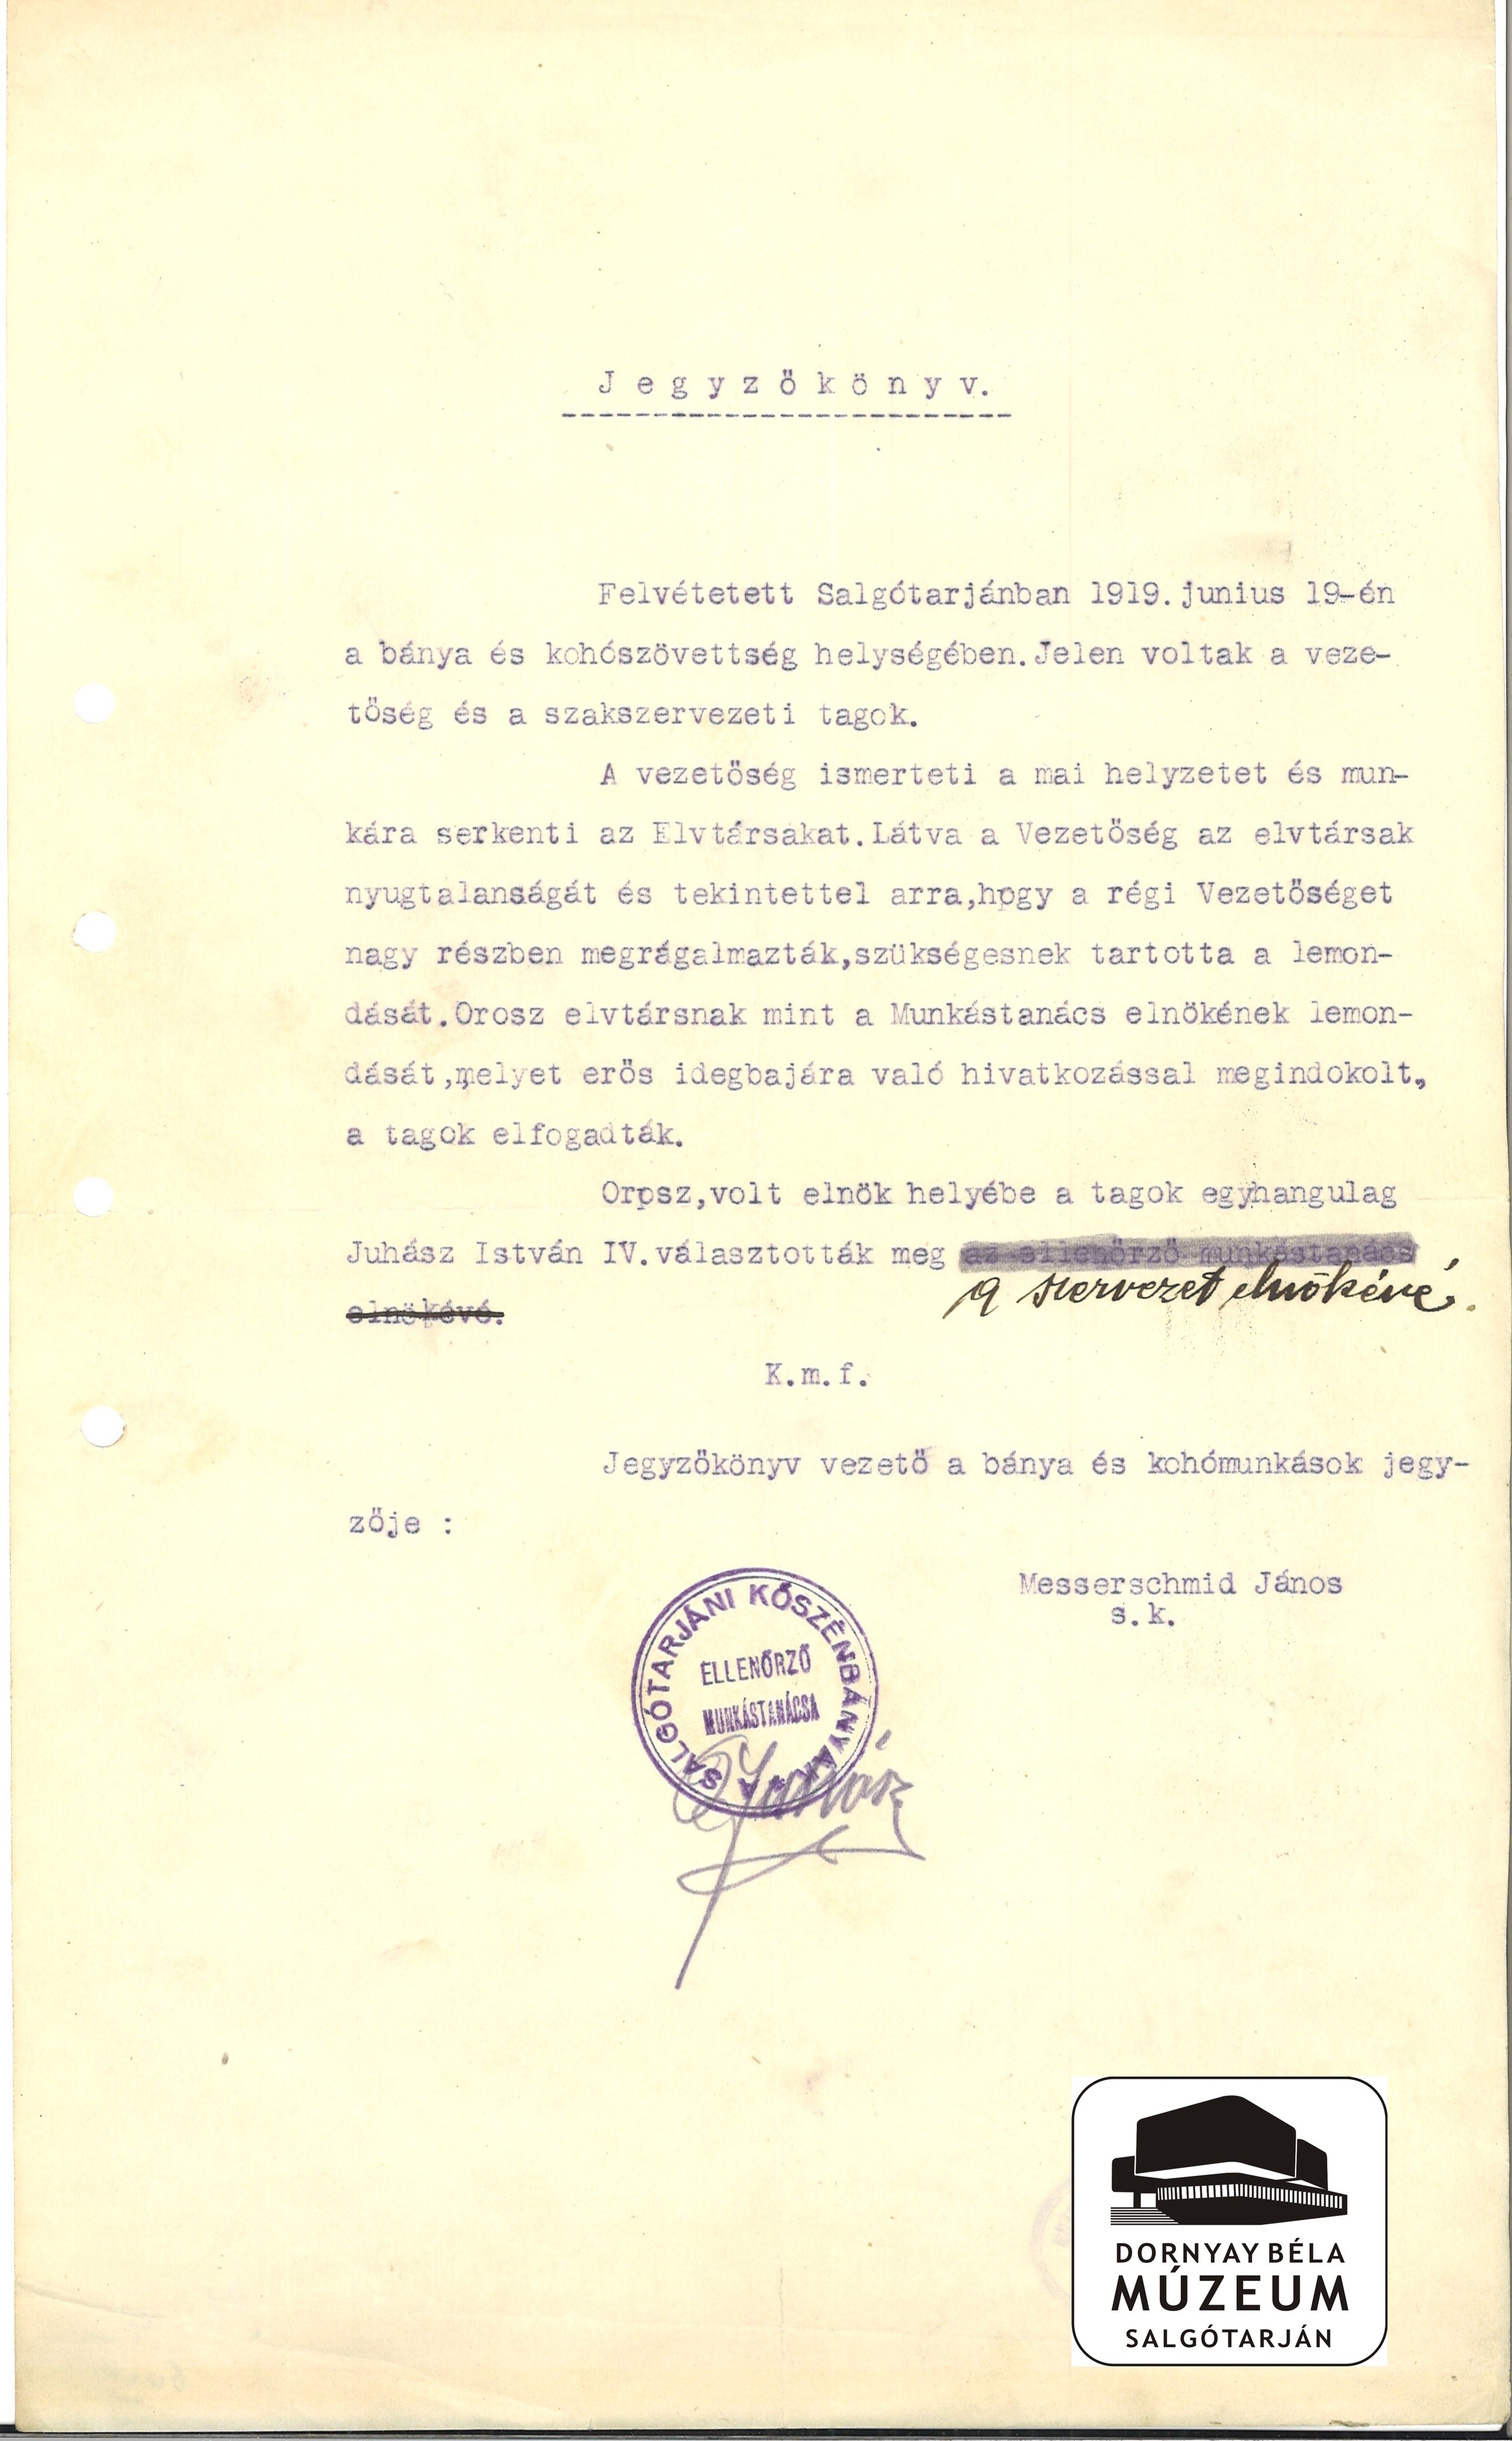 Jegyzőkönyv az Ellenőrző Munkástanács, St.1919.VI.19-én tartott üléséről (Orsz. Elnök lemondása) (Dornyay Béla Múzeum, Salgótarján CC BY-NC-SA)